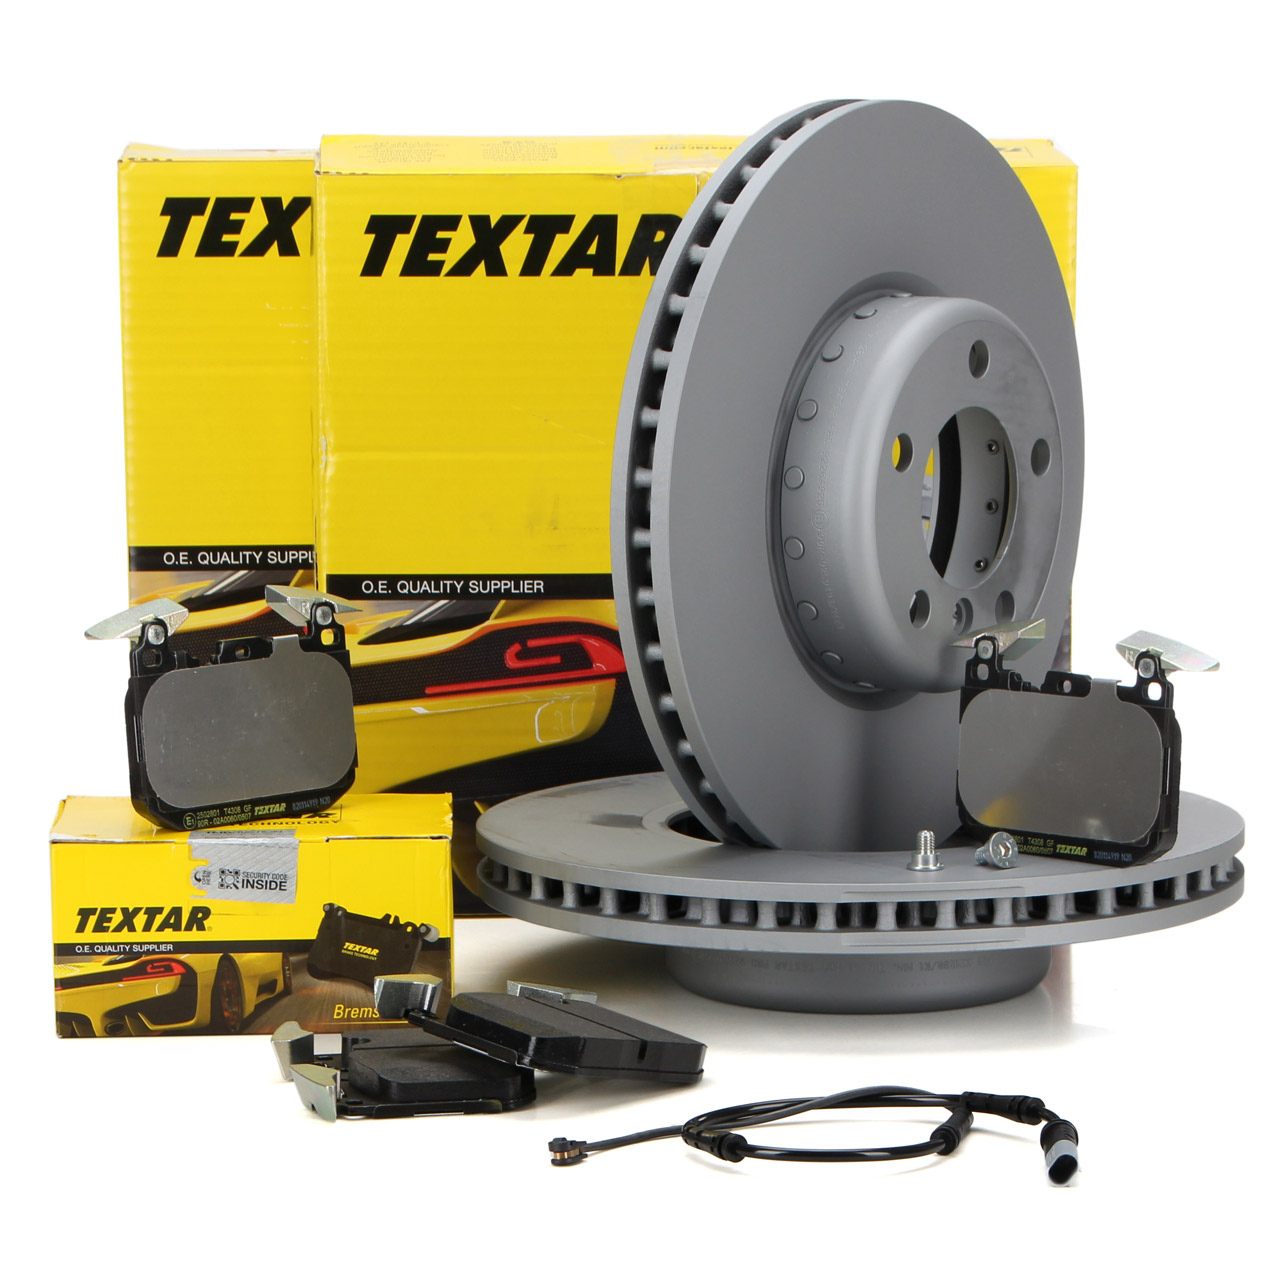 TEXTAR Bremsen Sets - 92110903, 2383201, 92092103, 2341703 - ws